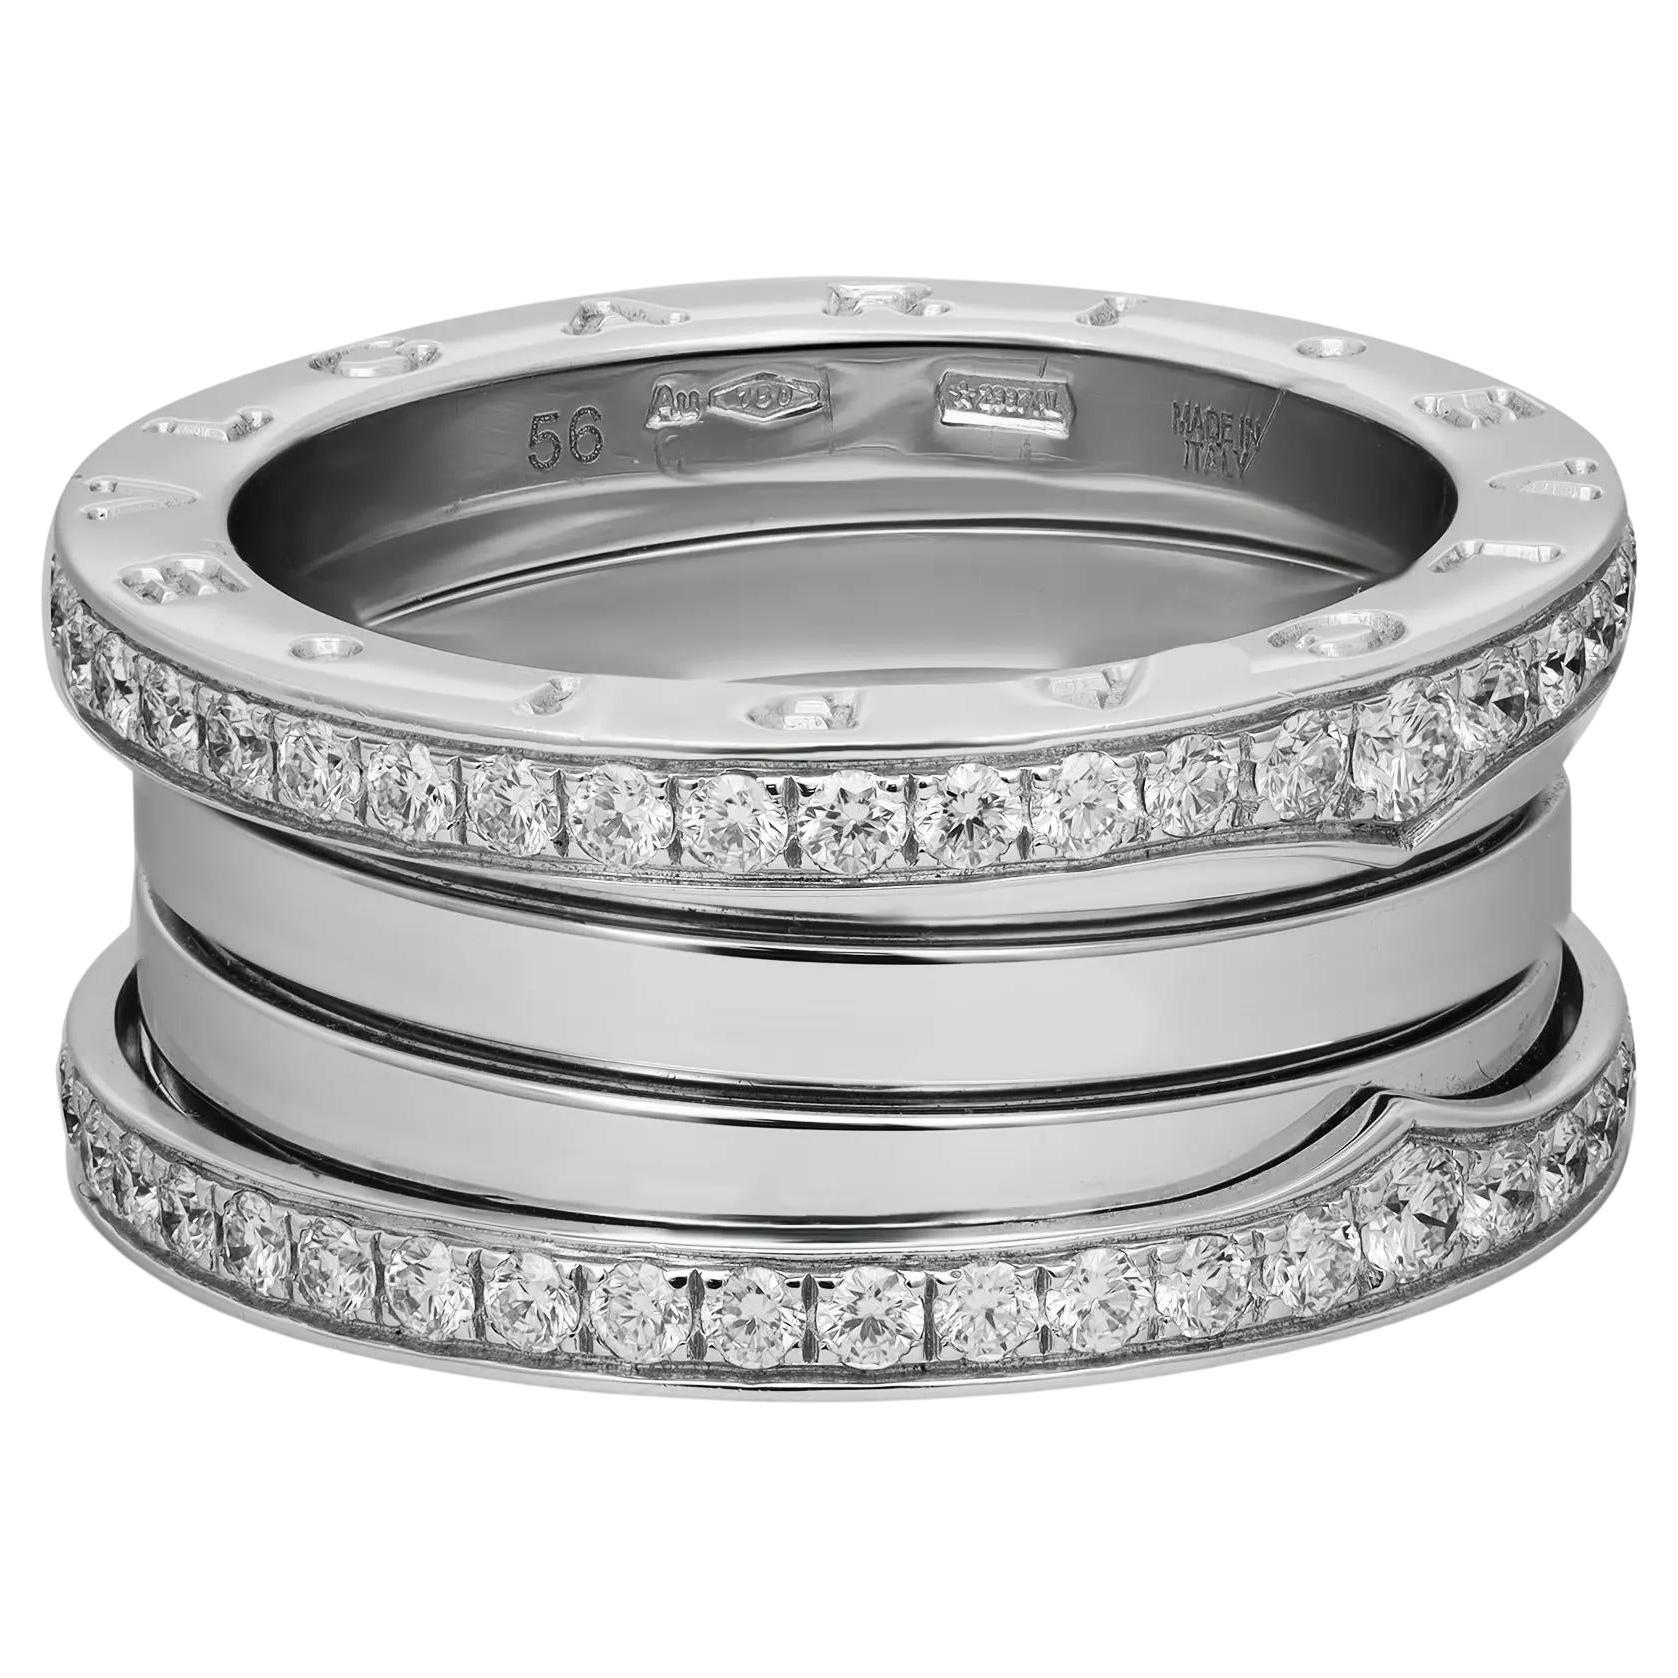 Bvlgari B.Zero1 Diamond Four Band Ring 18K White Gold Size 56 US 7.5 For Sale